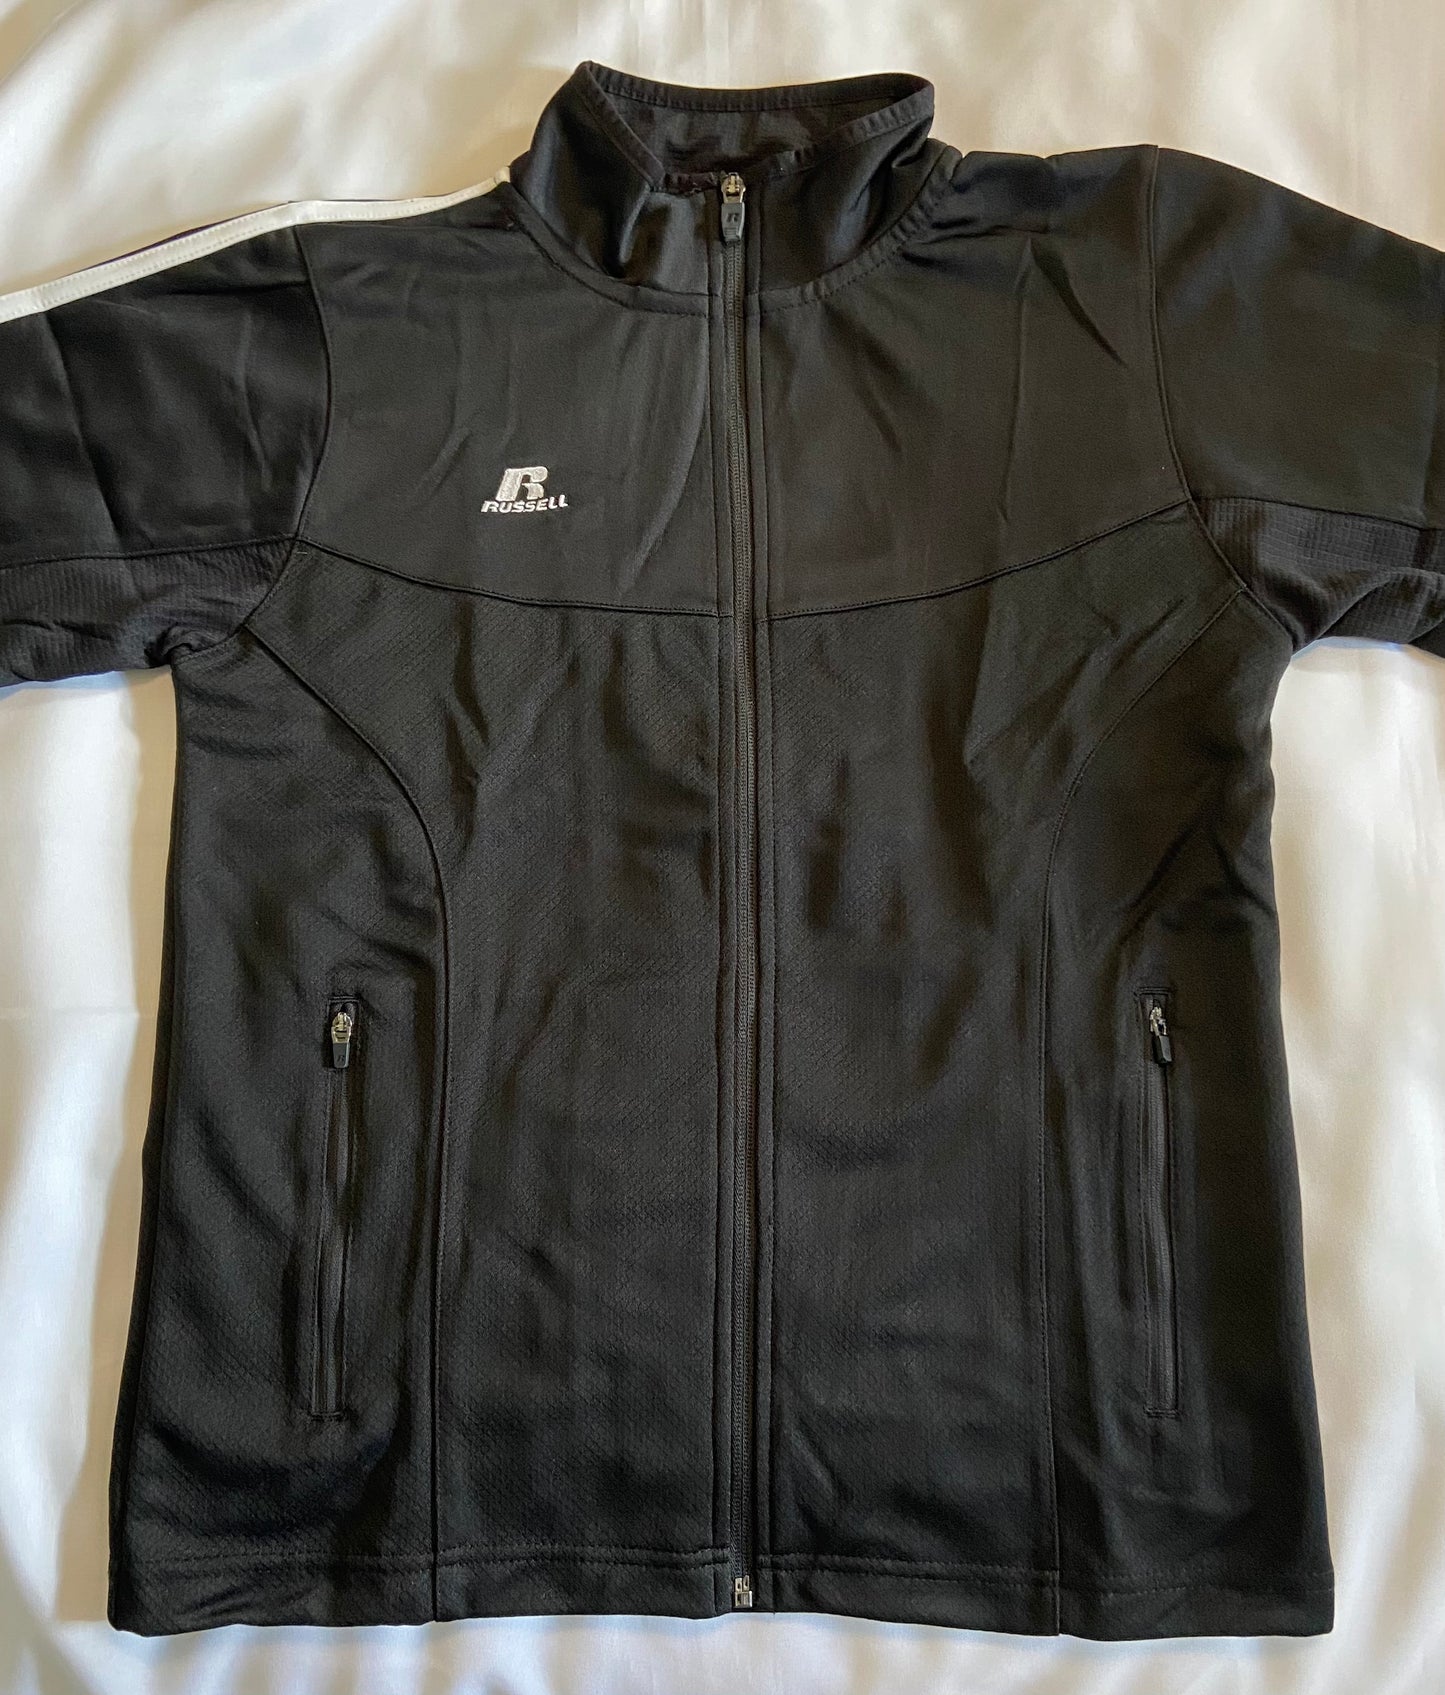 Russell Athletic Brand Full Zip Youth Jacket - Black or Dark Grey - Blank or Redskins print